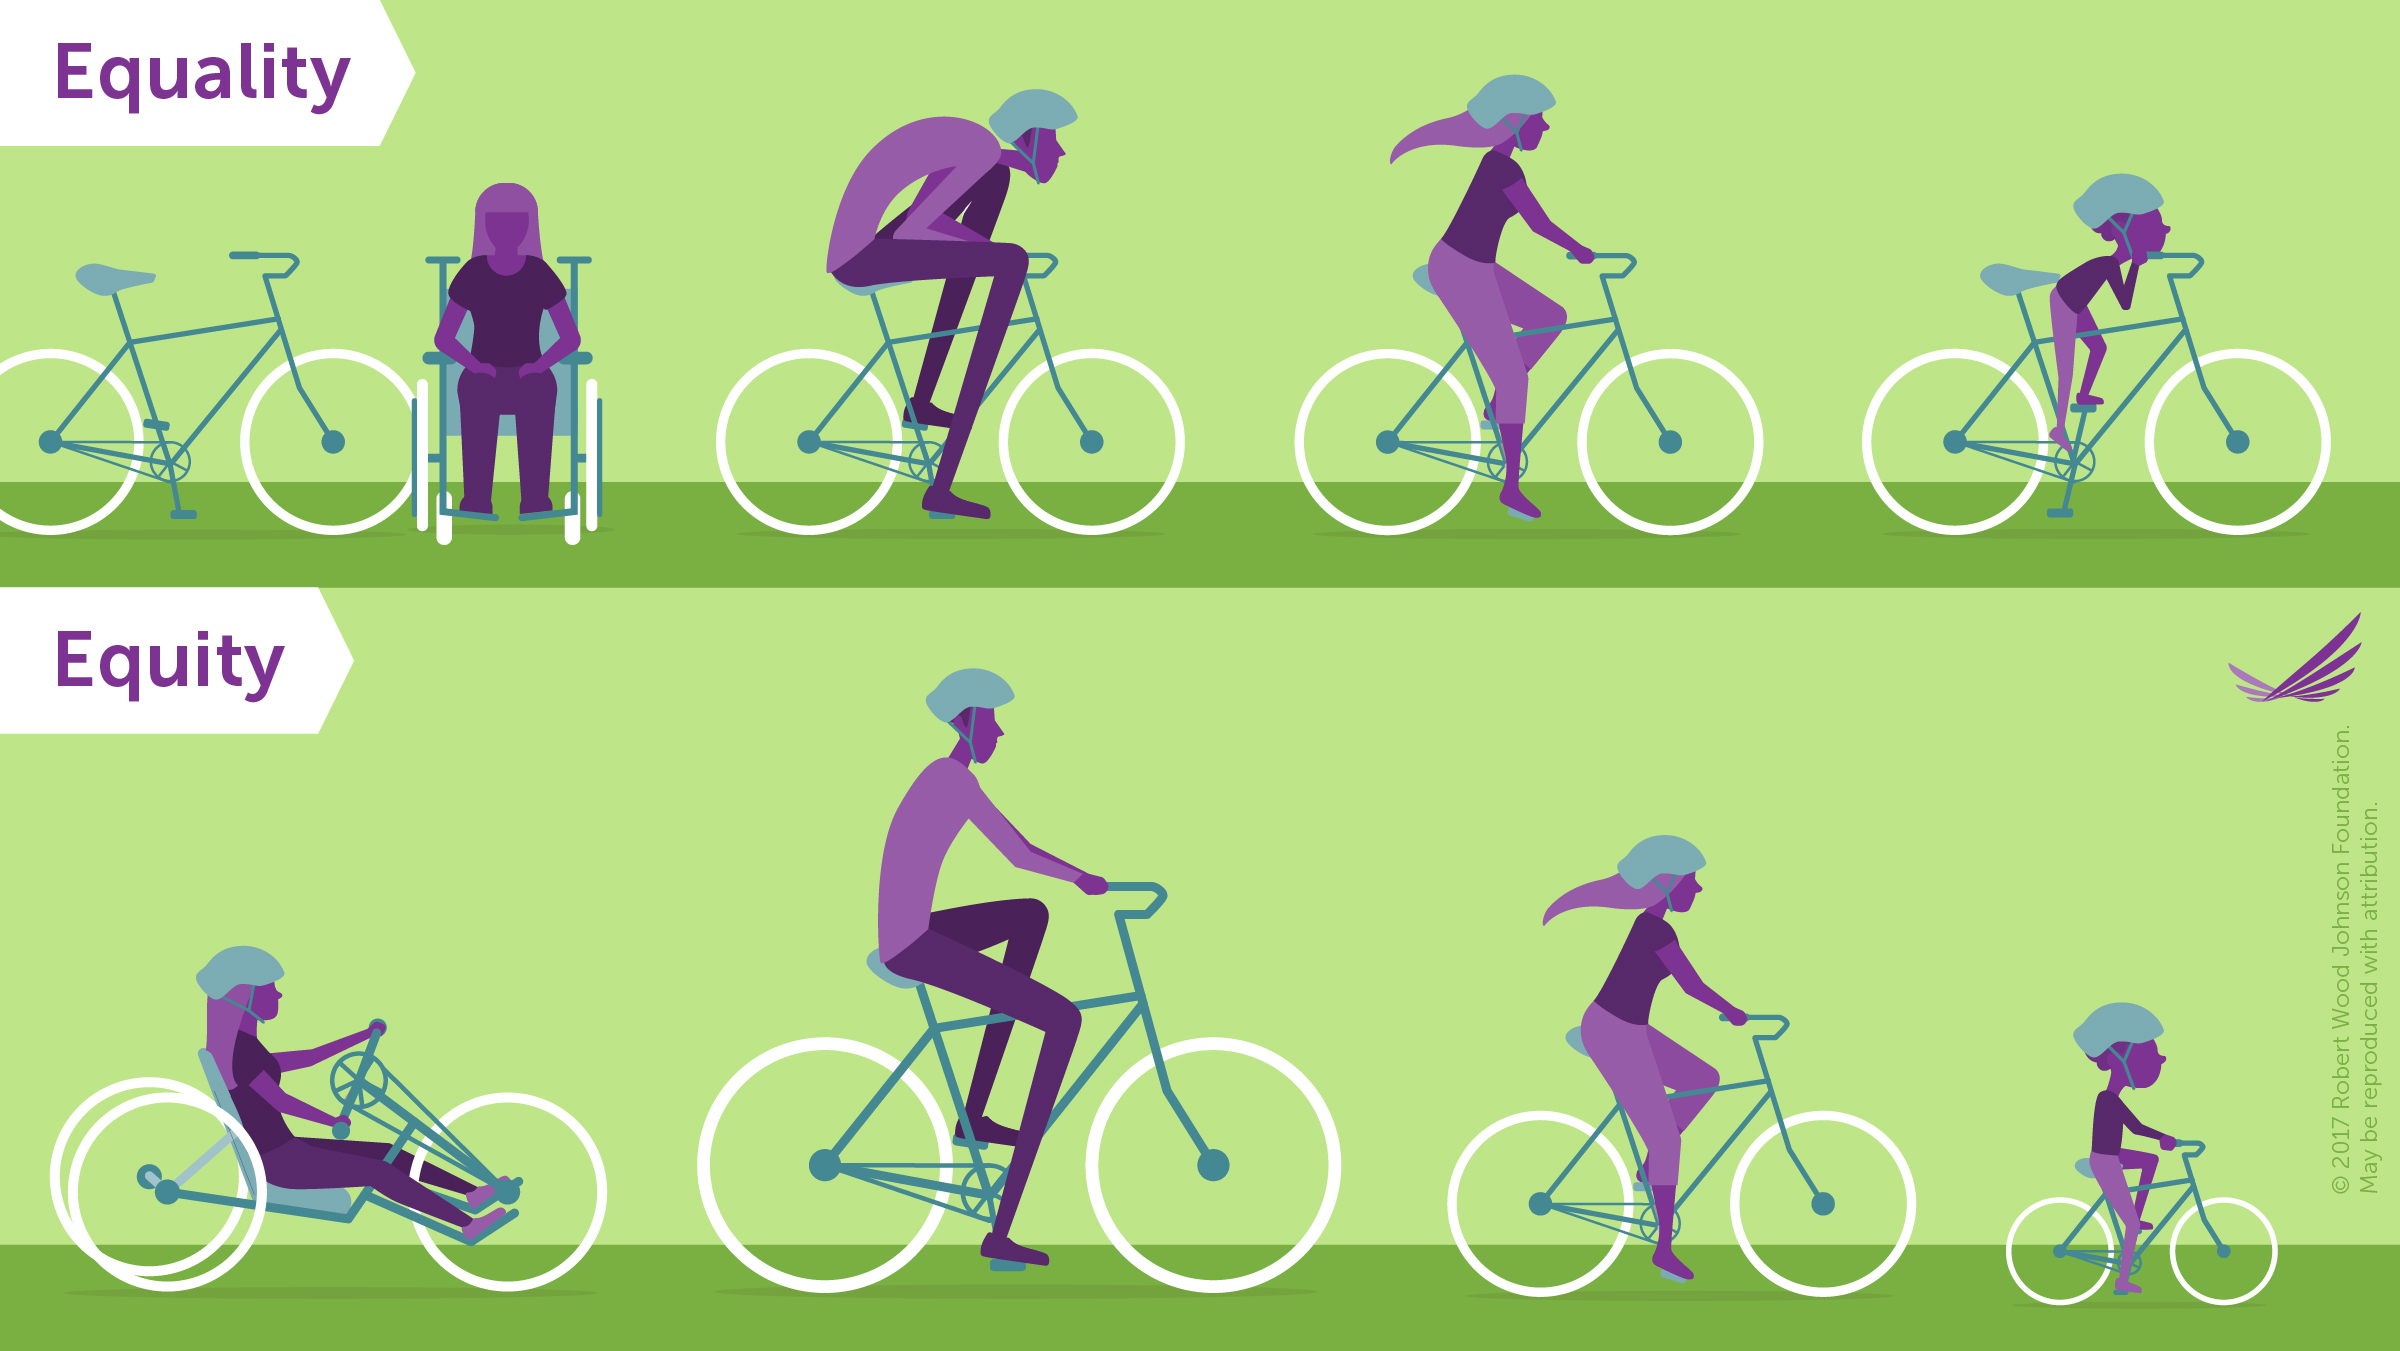 Изображение велосипедов, показывающее разницу между справедливостью и равенством